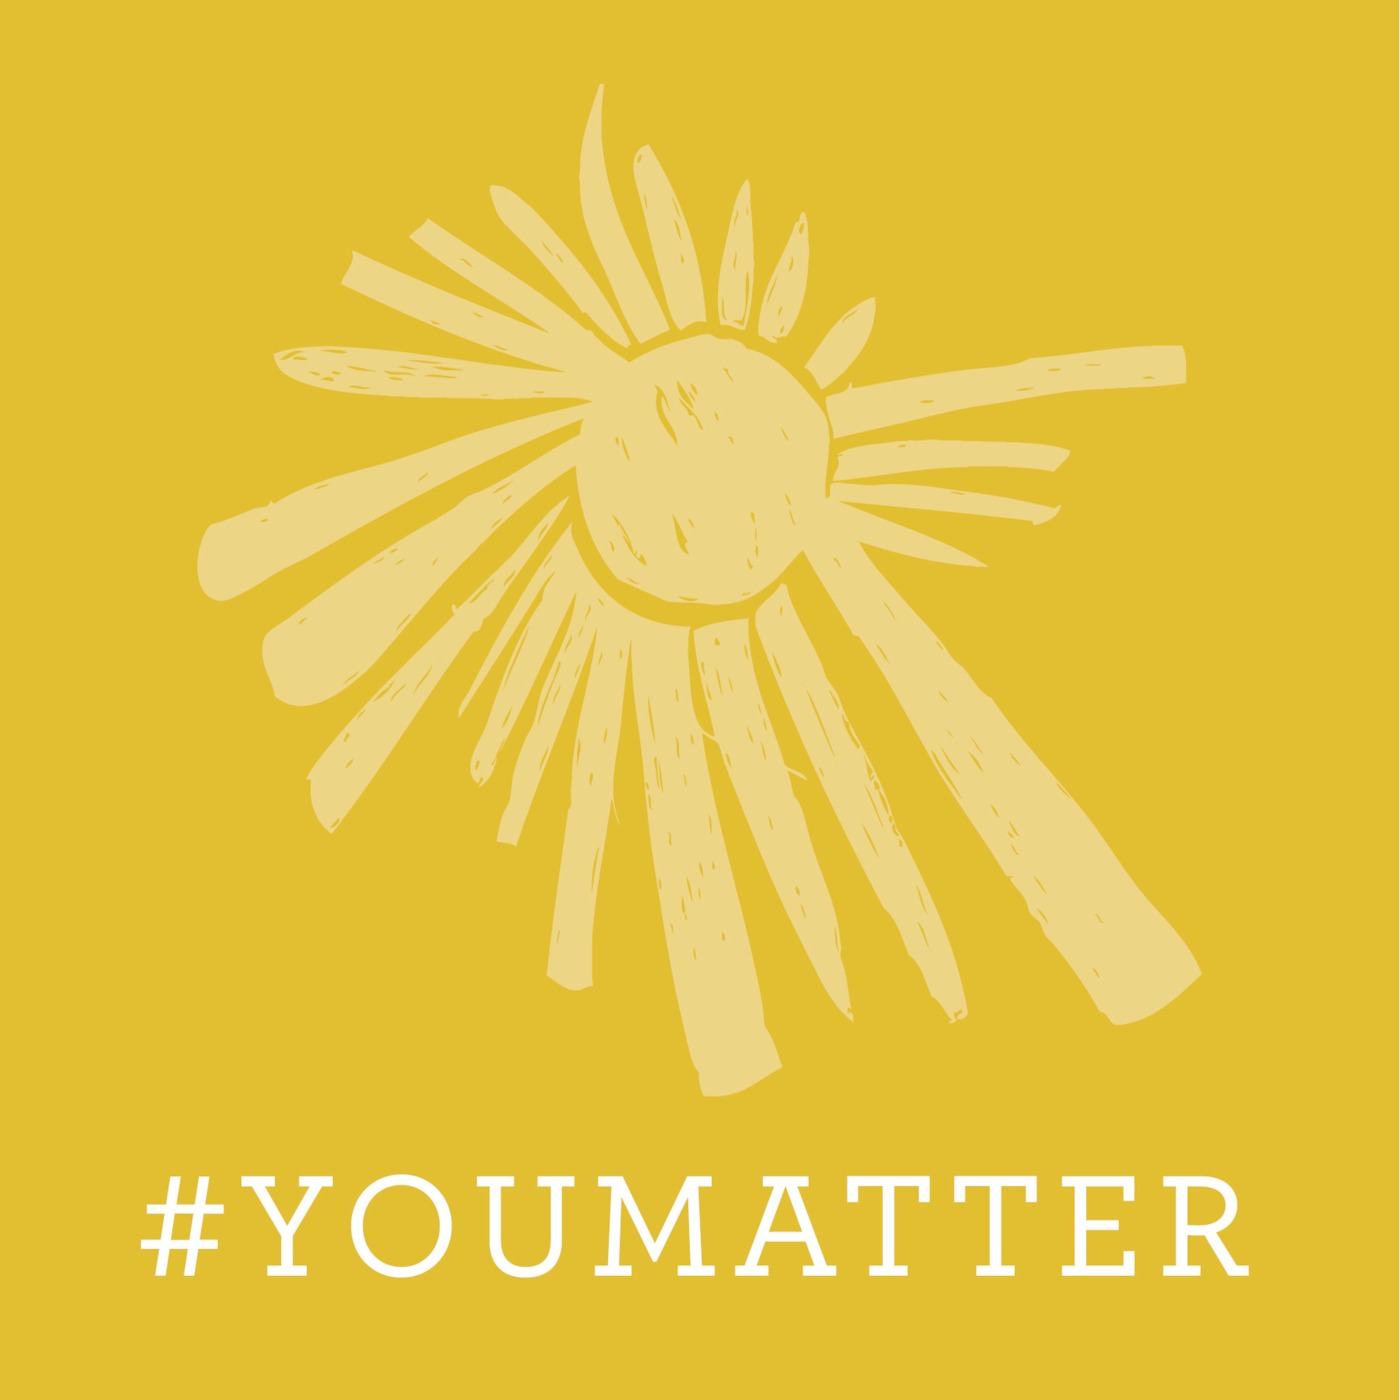 #YouMatter